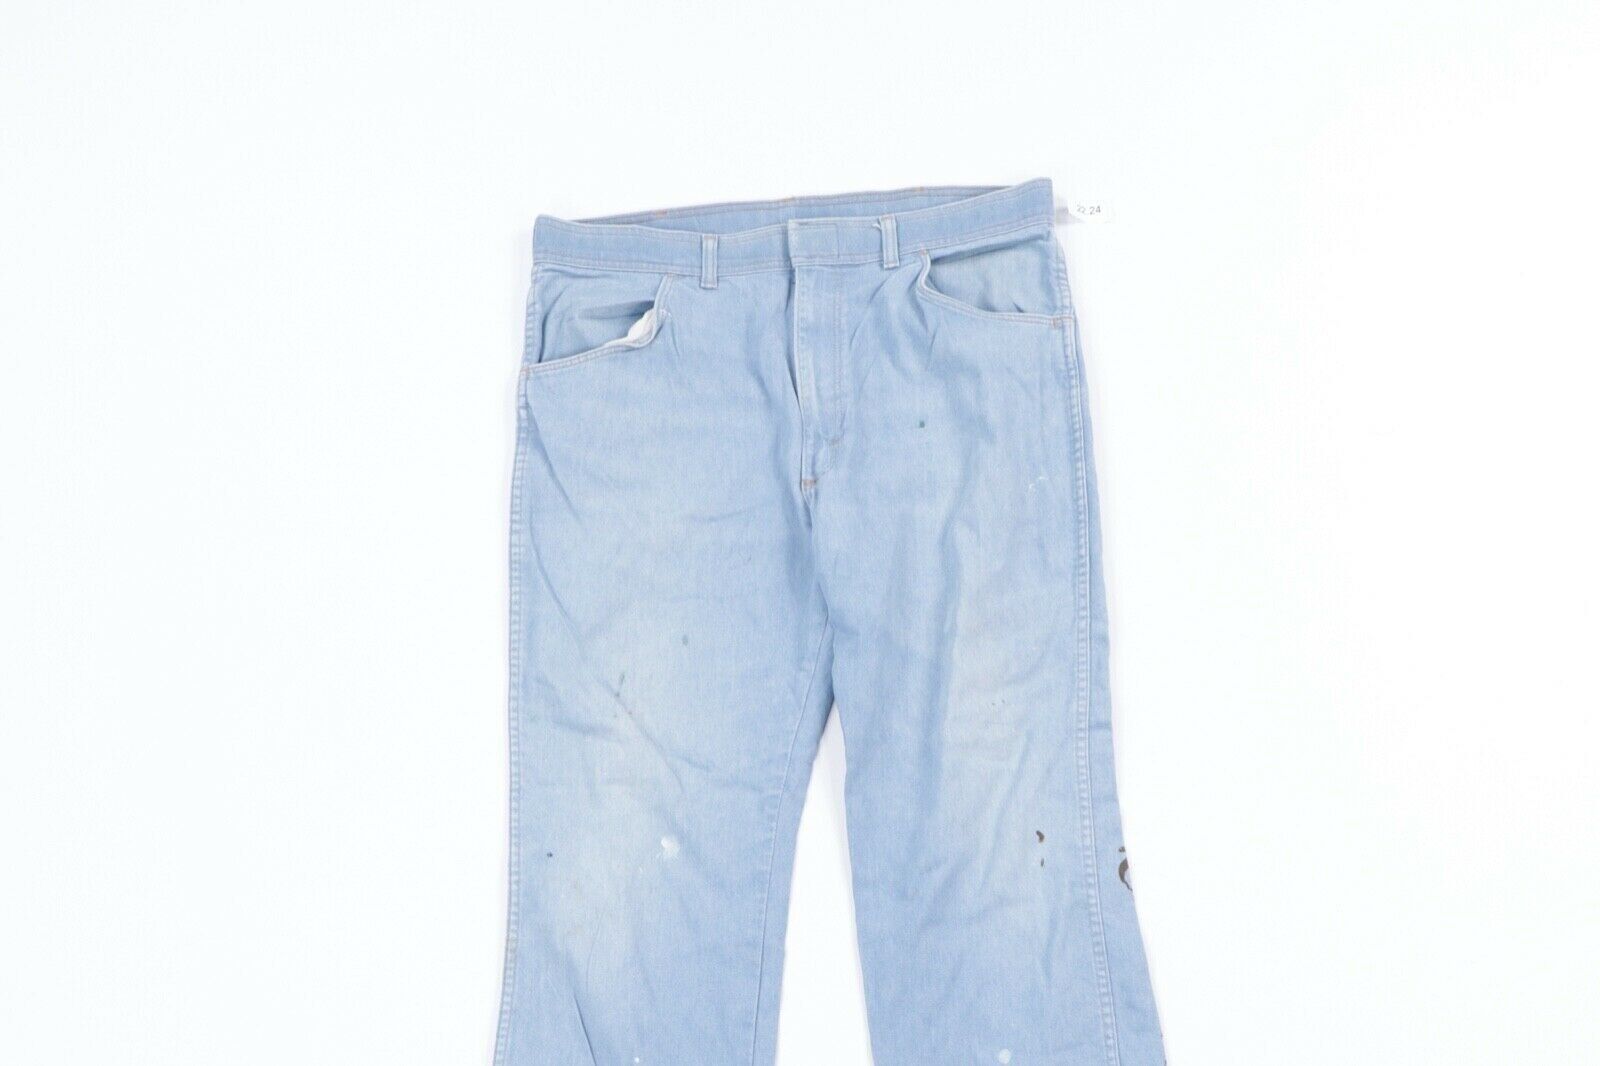 Vintage Vintage 80s Wrangler Thrashed Bootcut Denim Jeans Blue 36 Size US 36 / EU 52 - 2 Preview